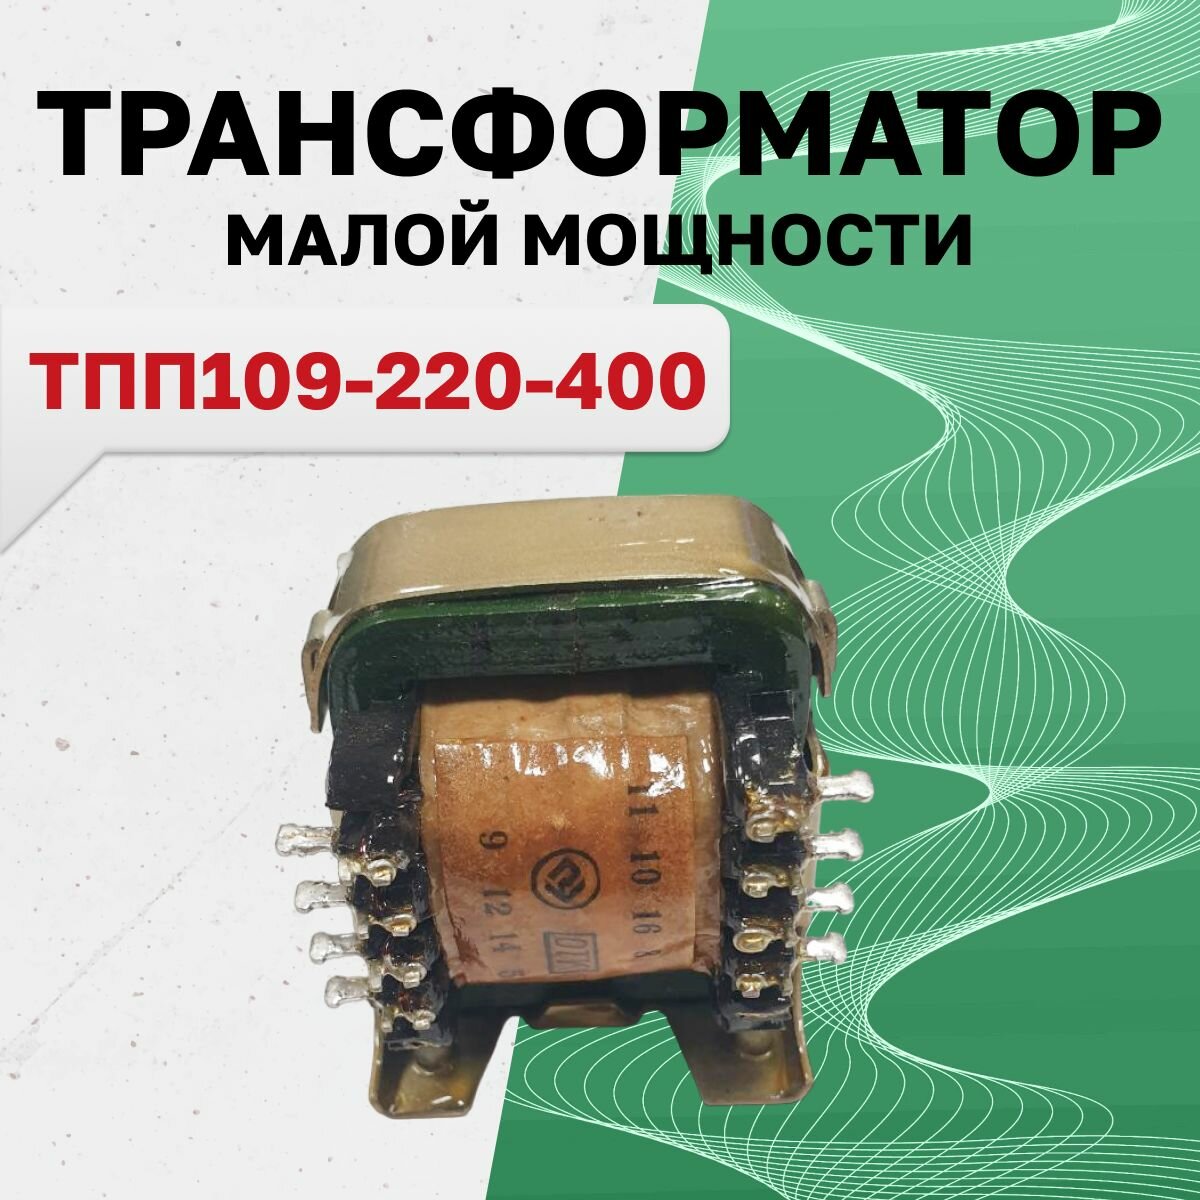 ТПП109-220-400 (г/в 11.07г.) Трансформатор